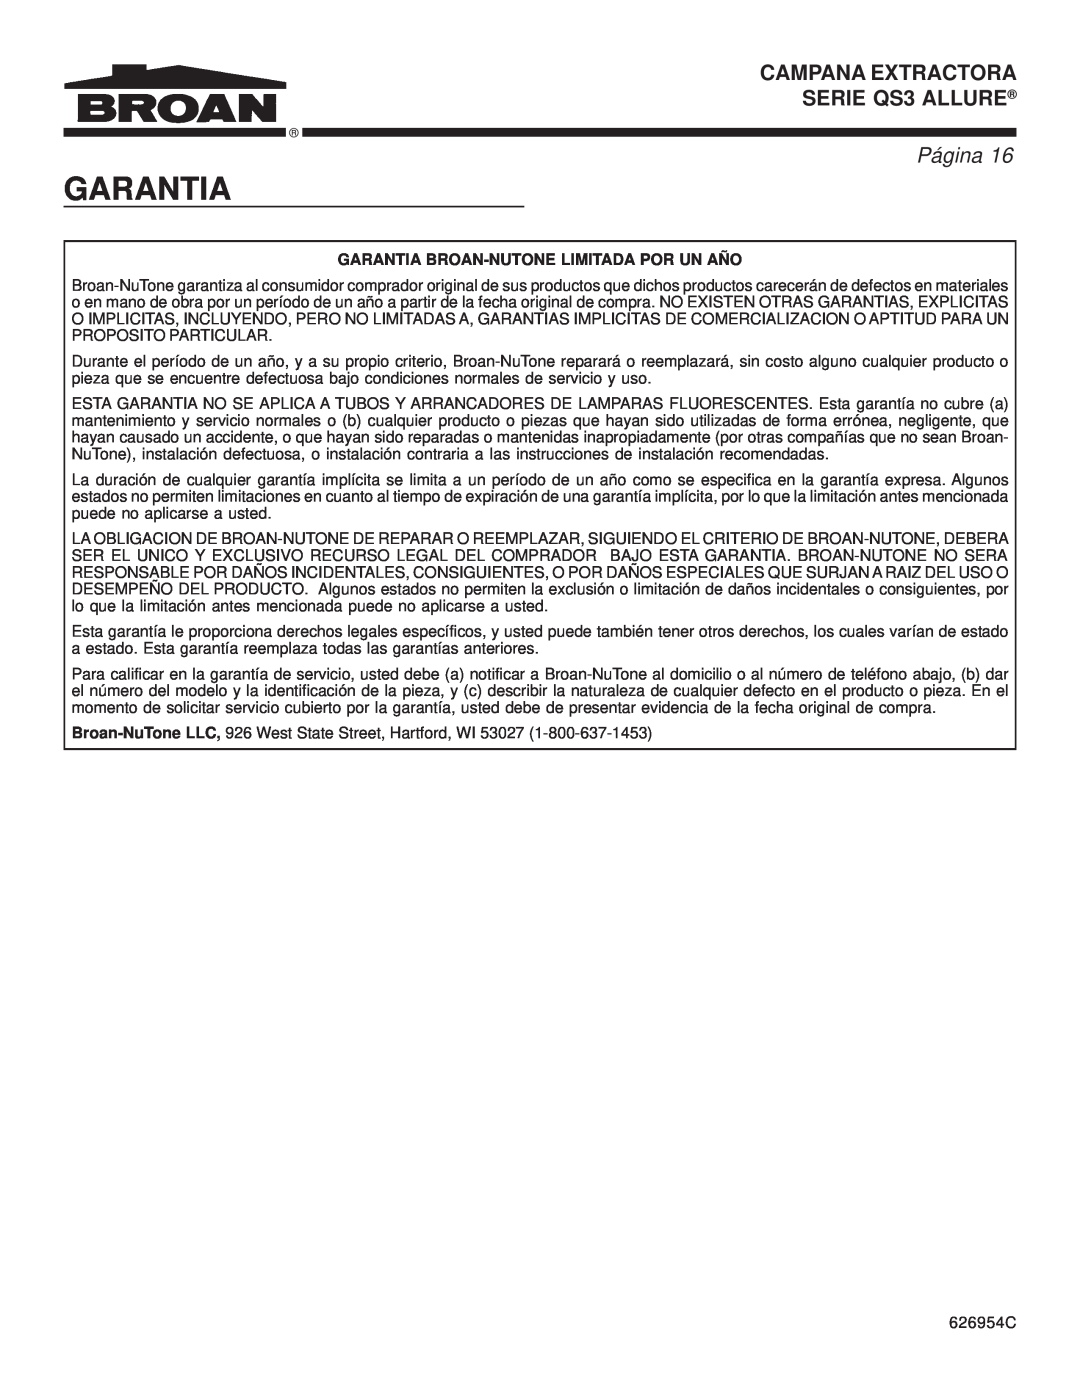 Broan warranty CAMPANA EXTRACTORA SERIE QS3 ALLURE, Página, Garantia Broan-Nutonelimitada Por Un Año 